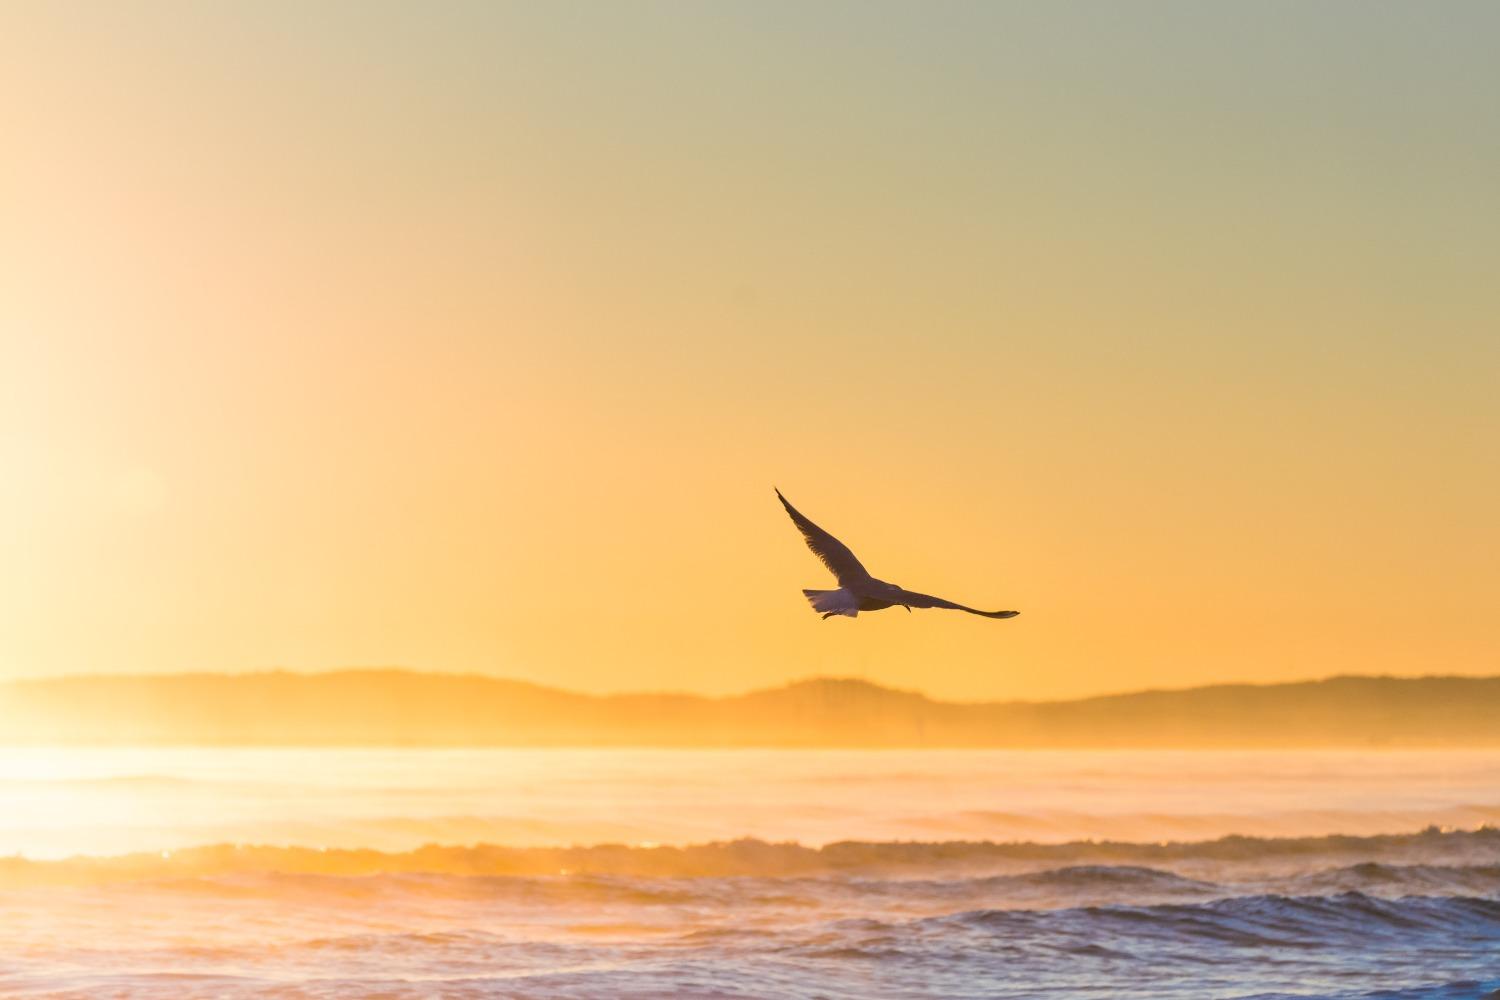 A bird flies over the beach